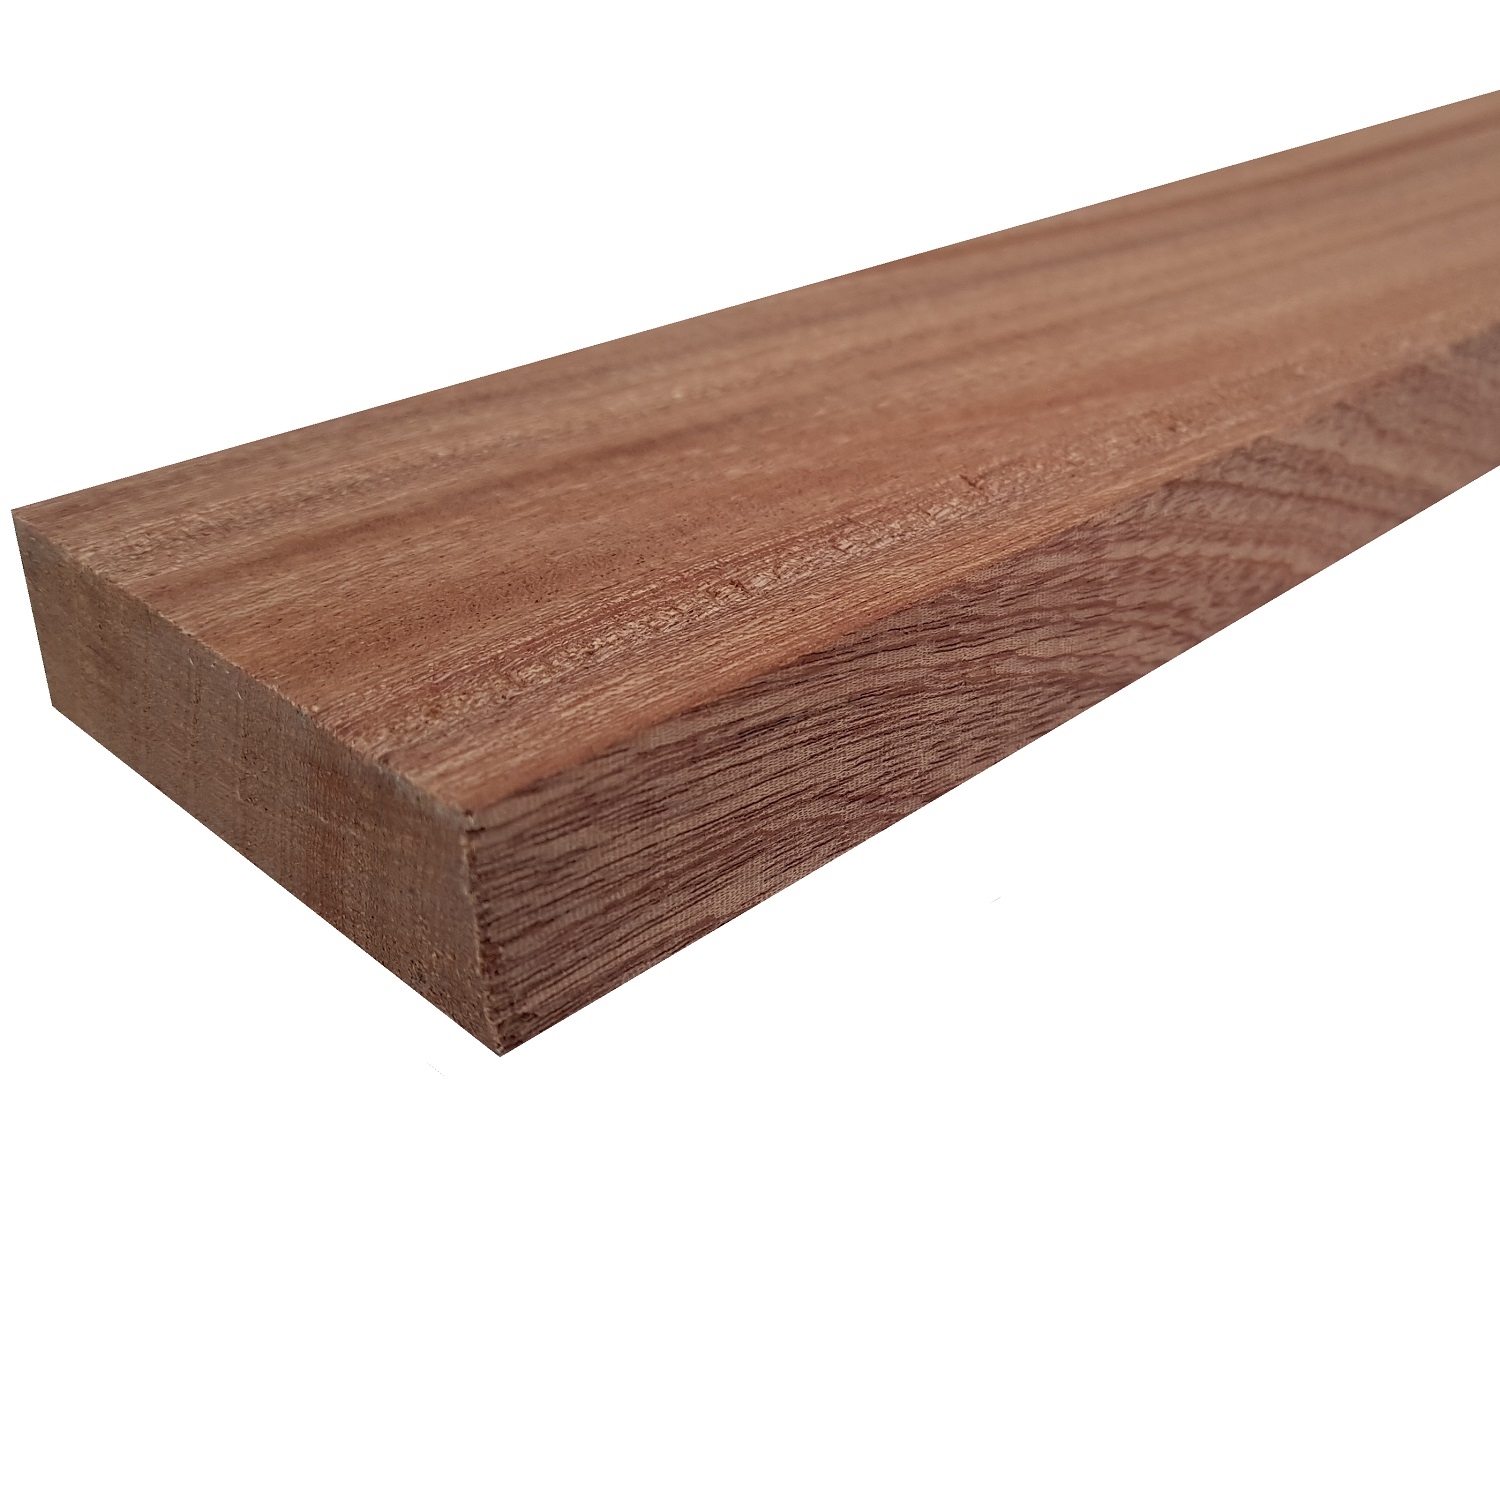 Tavola legno Mogano Piallata mm 21 x 170 x 3000